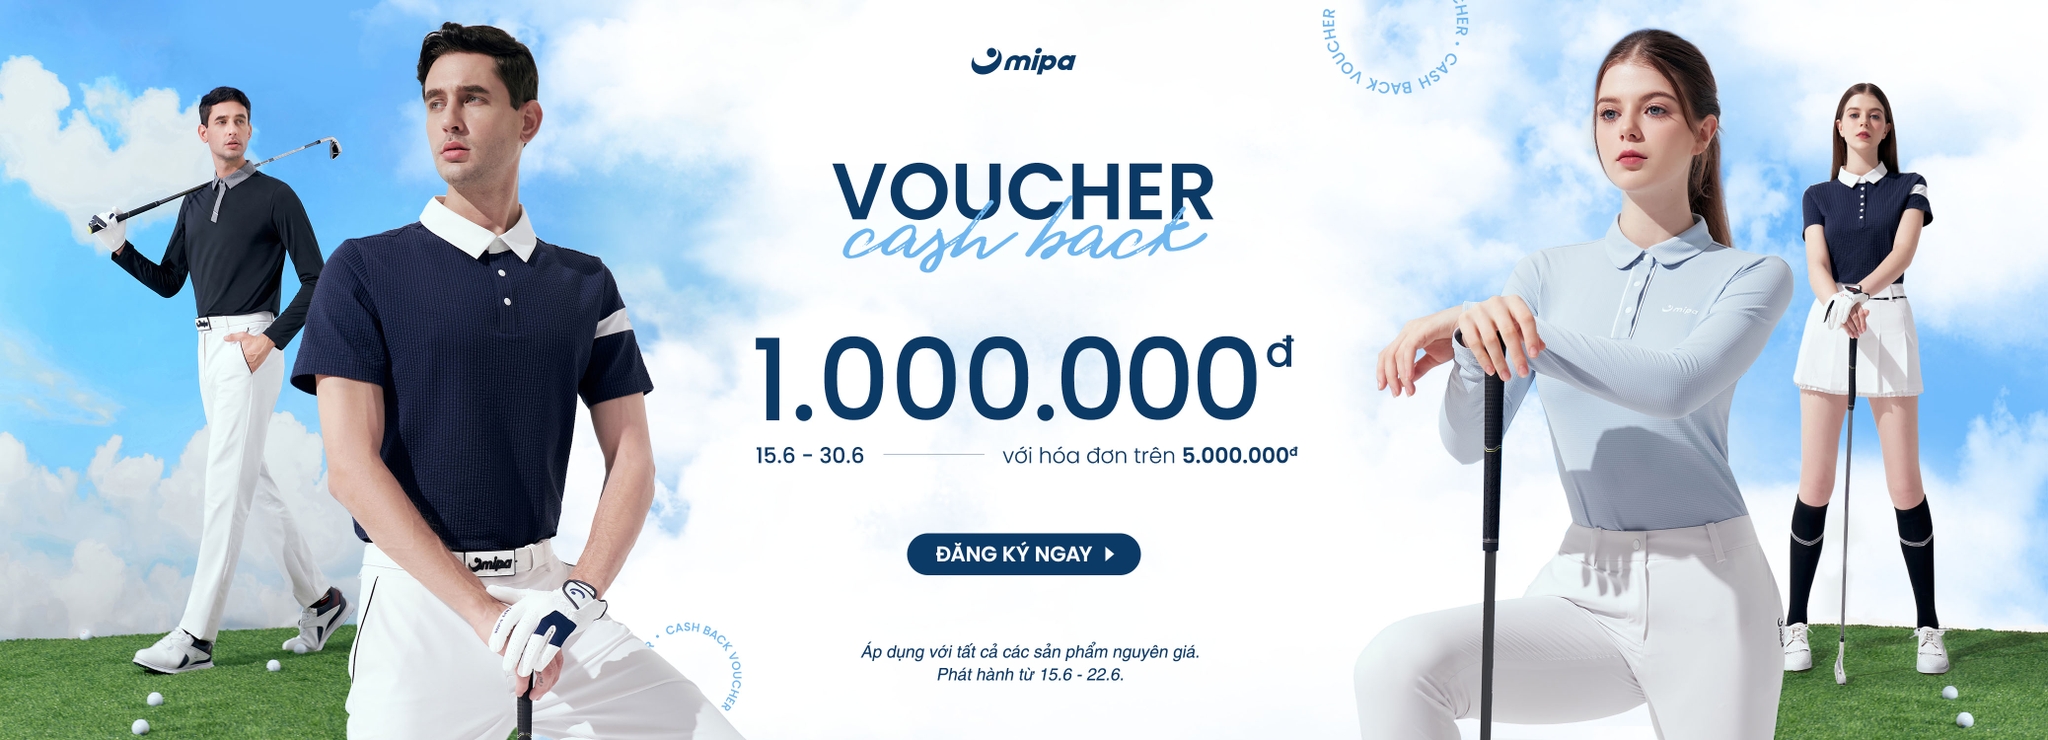 CASH BACK VOUCHER | Cashback 1.000.000đ cho tất cả đơn hàng từ 5 triệu